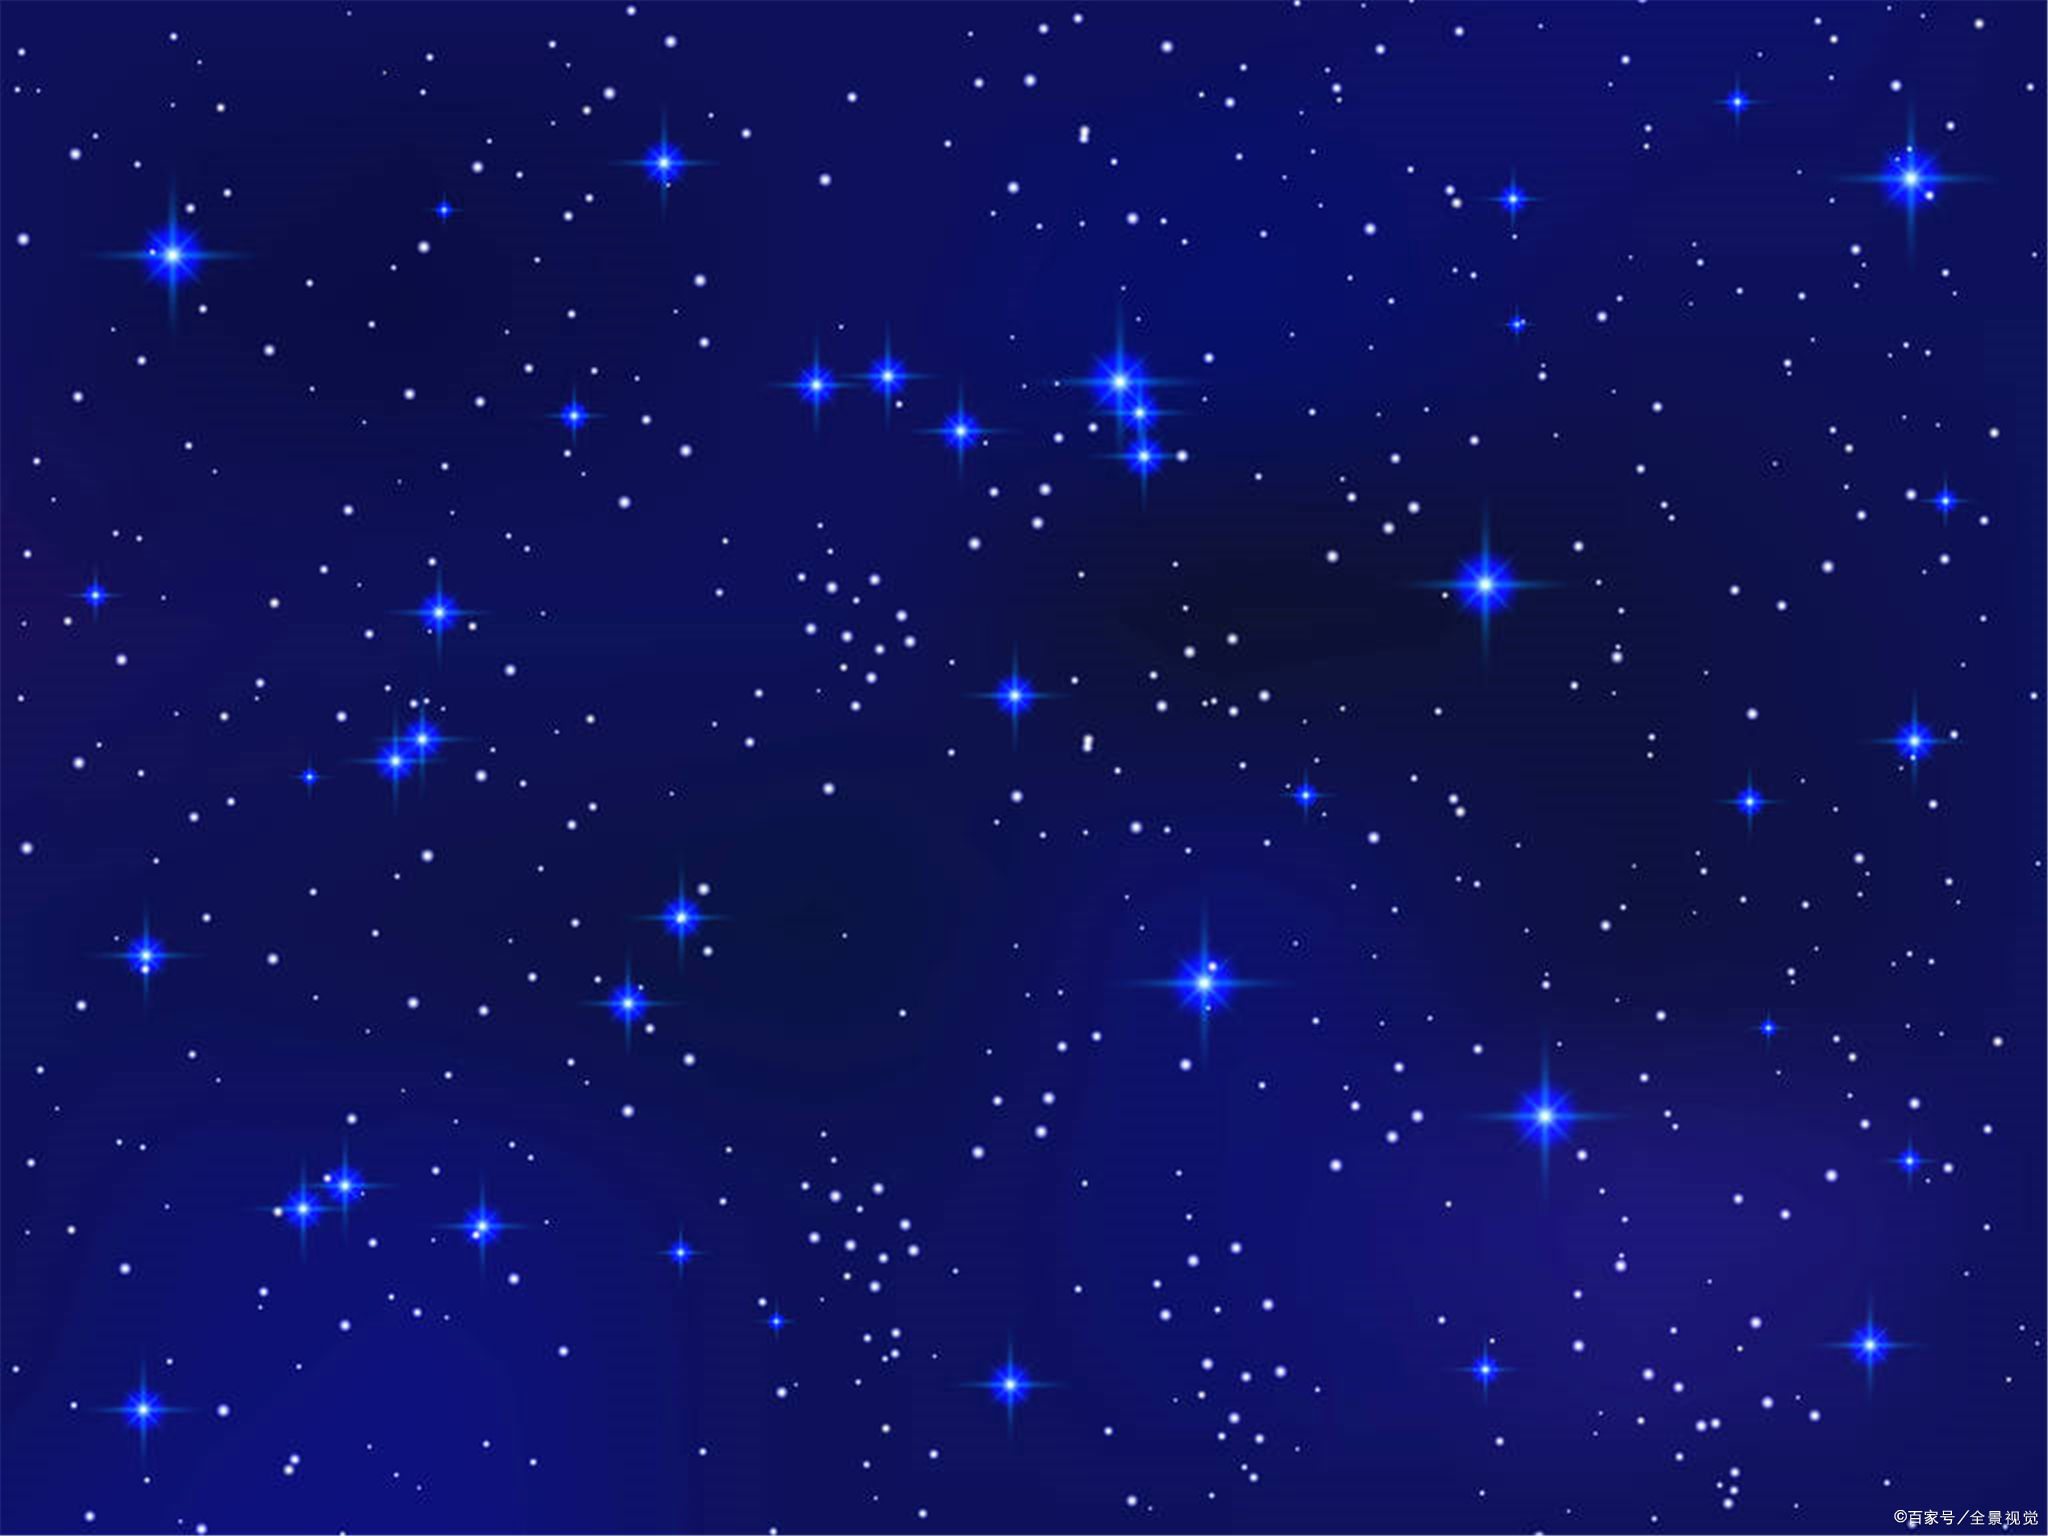 上升星座的运势怎么看,如何看自己星座的上升星座